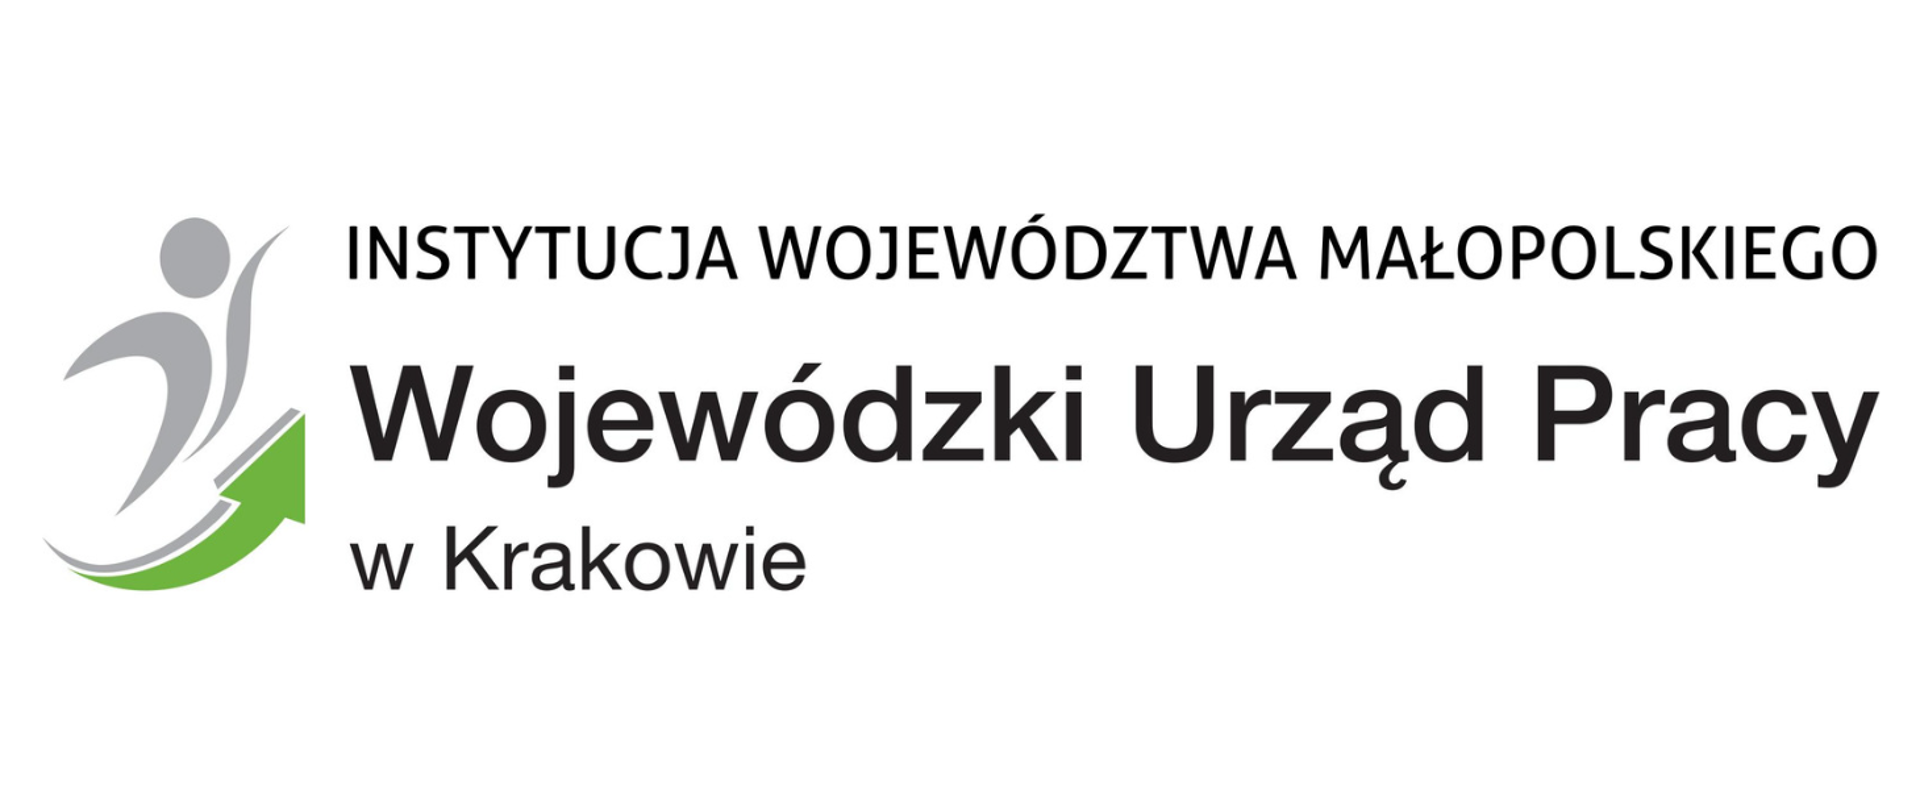 Napis "instytucja województwa małopolskiego" Wojewódzki Urząd Pracy w Krakowie, z lewej rysunek szkicowy człowieka w kolorze szarym oraz zielona strzałka